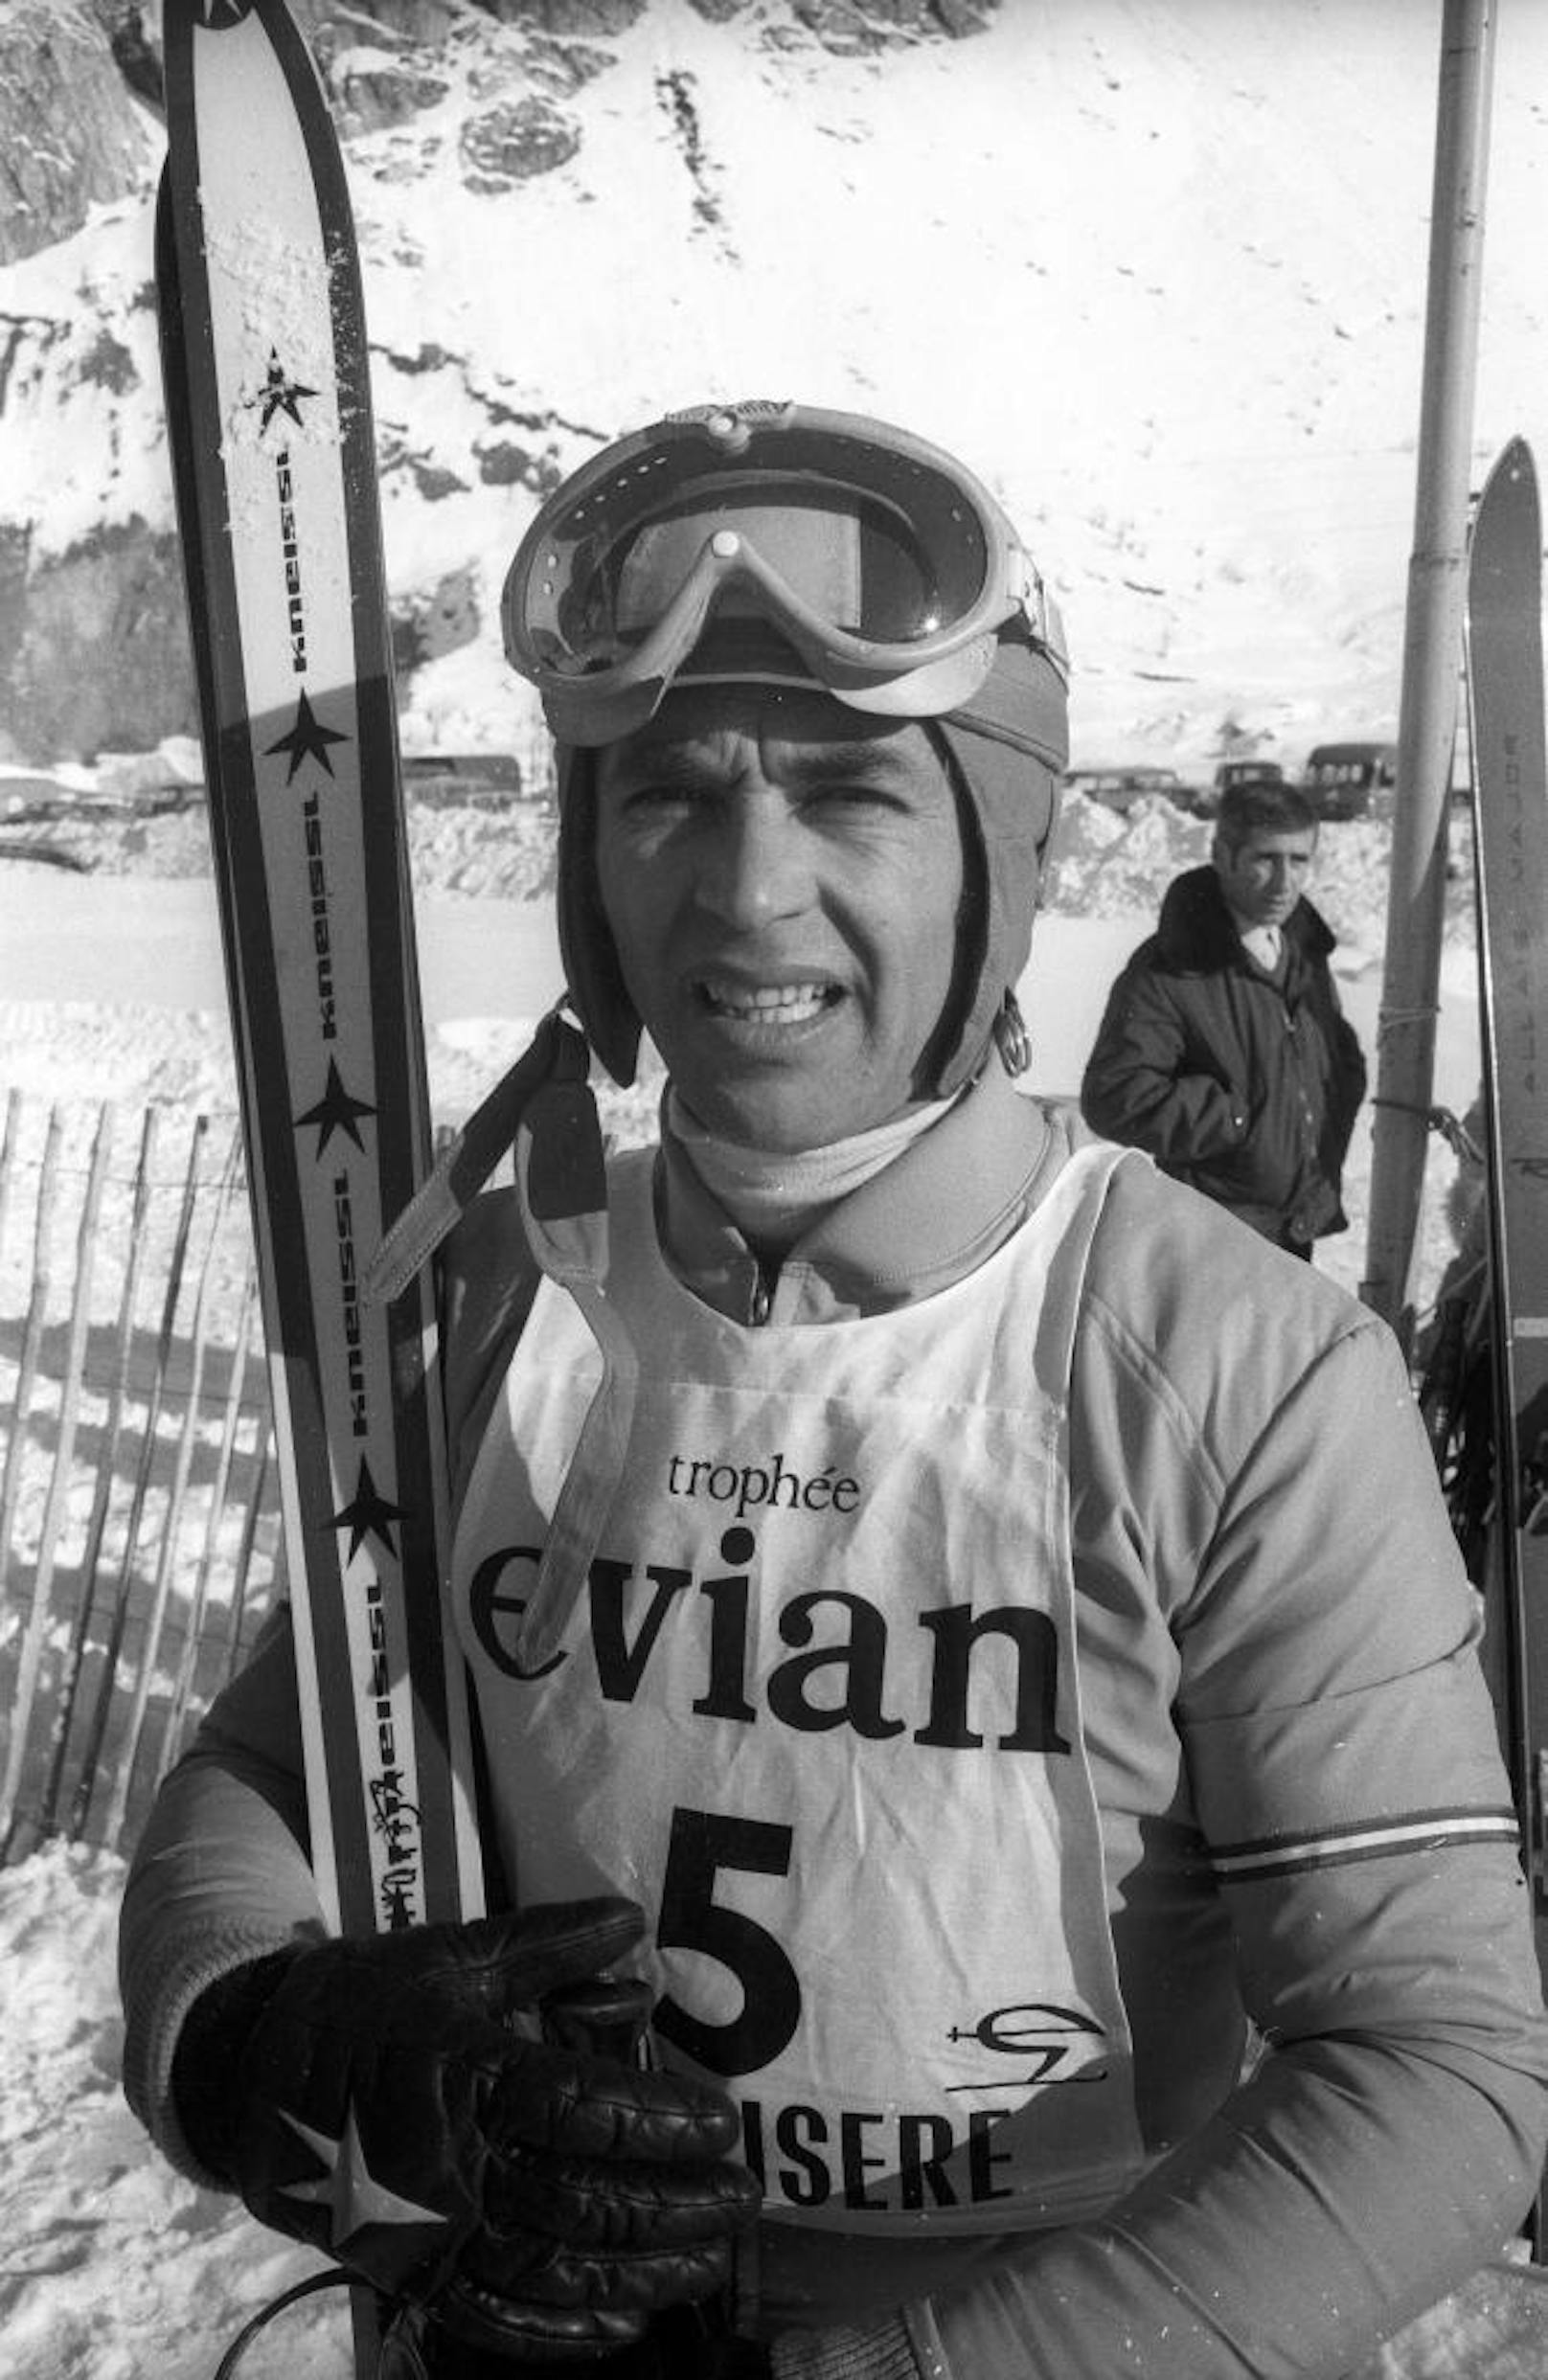 <b>Platz 10: Karl Schranz (3 x Gold, 2 x Silber, 1 x Bronze)</b>
Pech und Drama bei Olympischen Spielen, große Erfolge bei Weltmeisterschaften! Karl Schranz krönte sich 1962 in Chamonix zum Doppel-Weltmeister (Abfahrt, Kombi). Zum "Drüberstreuen" holte er Silber im Riesentorlauf. 1964 in Innsbruck schwang er erneut als RTL-Vize-Weltmeister ab. 1966 in Portillo holte Schranz RTL-Bronze, ehe er 1970 in Gröden noch mal Weltmeister in der technischen Disziplin wurde.